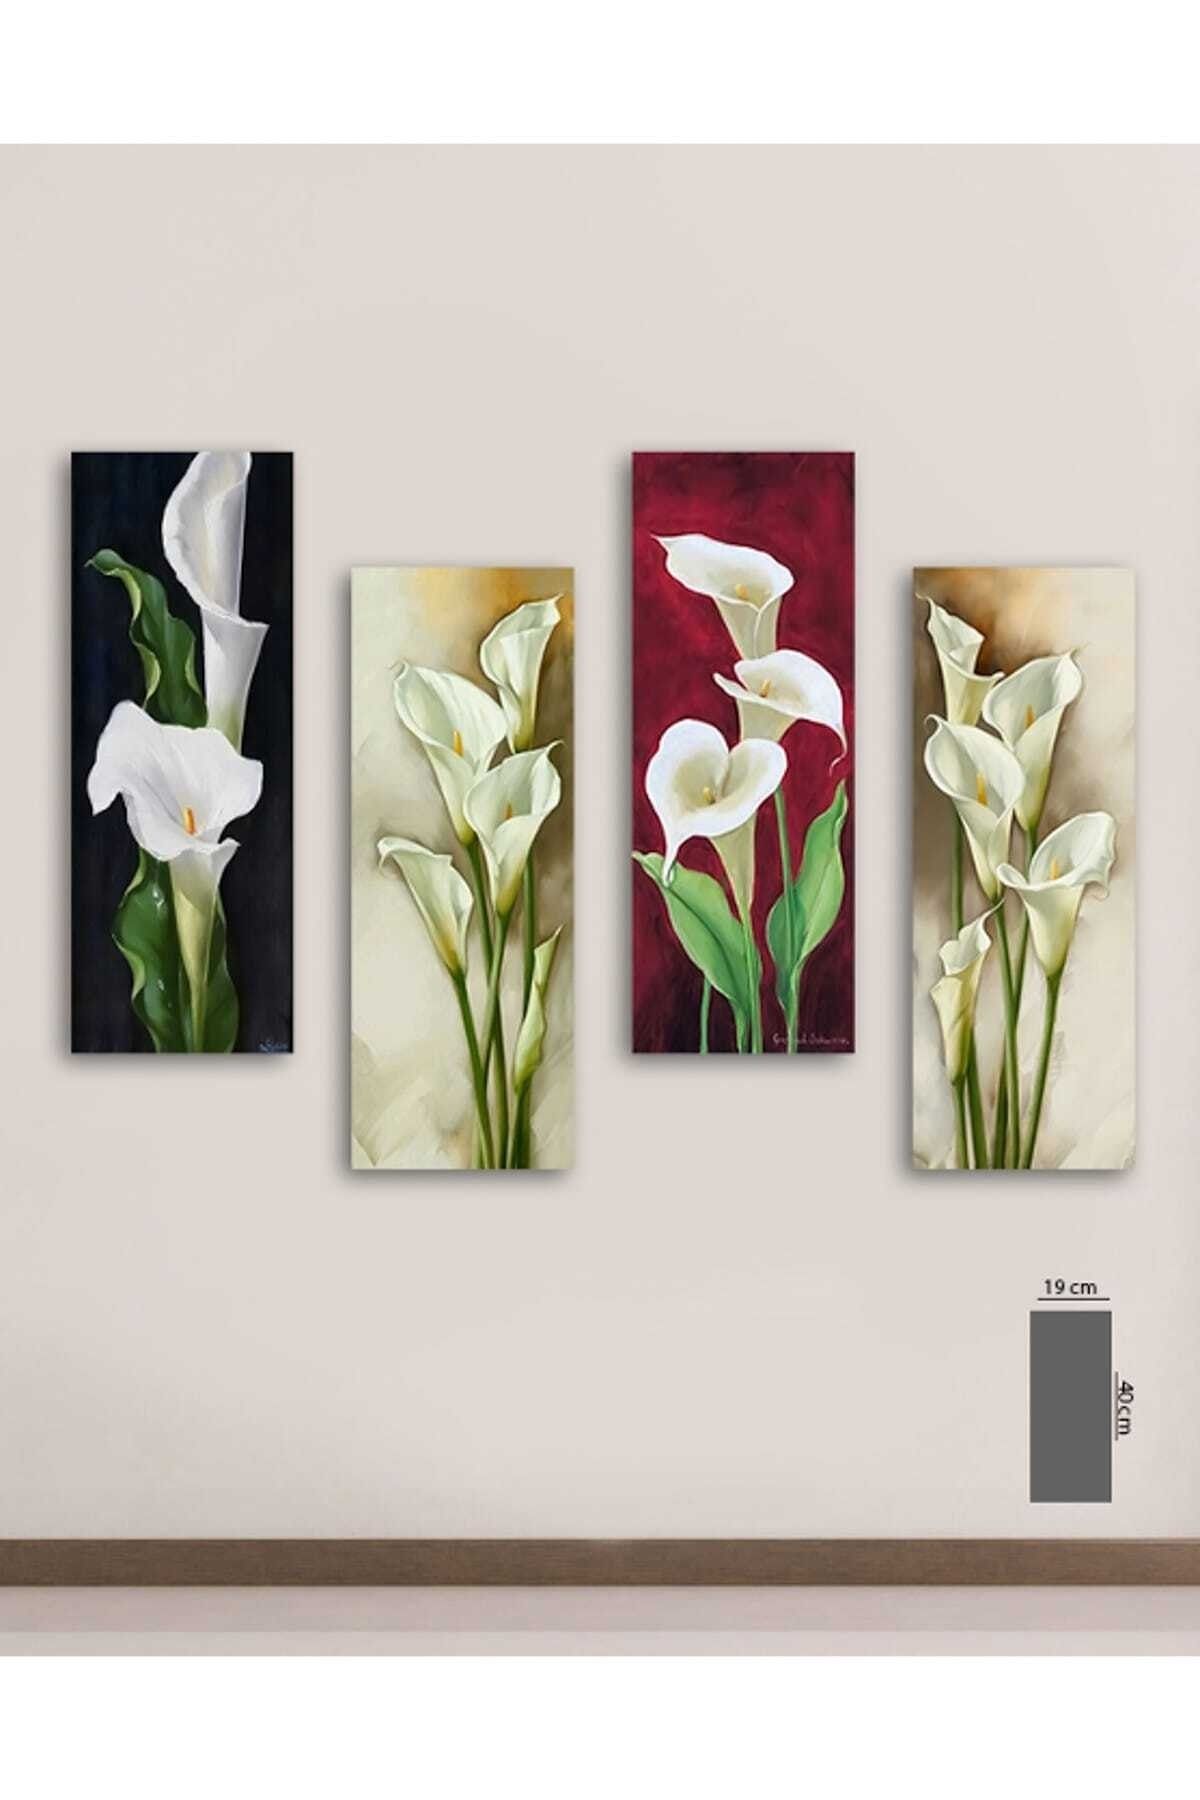 Evimona 4 Parça Gelin Çiçeği Mdf Tablo - 4dikey-47 / 19x40